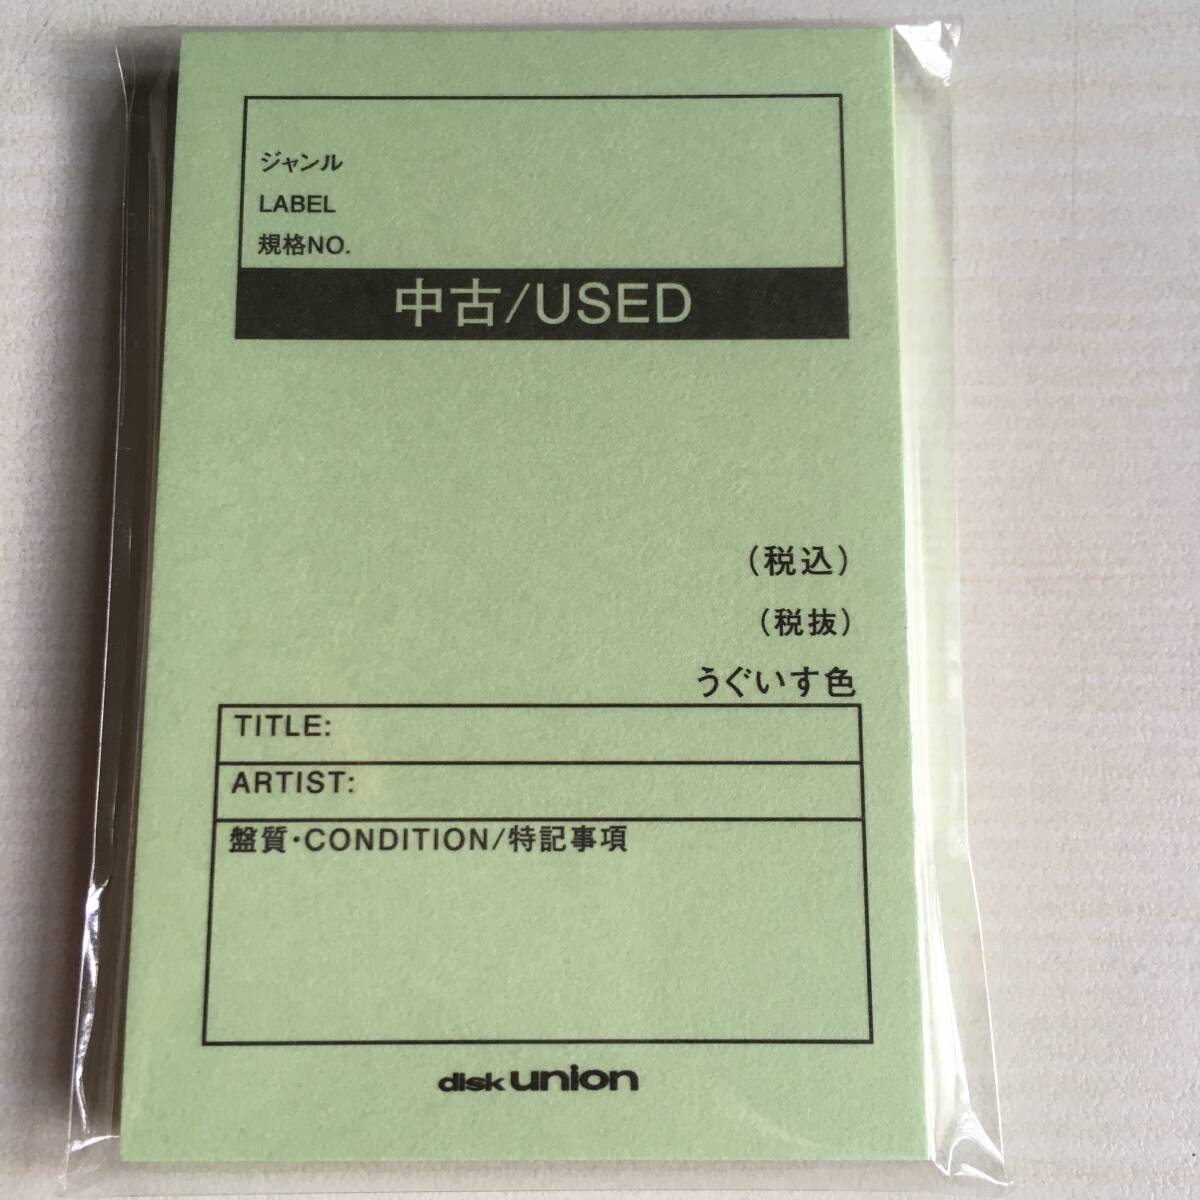  не продается Disk Union диск Union б/у карта type память не использовался 4 шт. комплект совместно подарок 